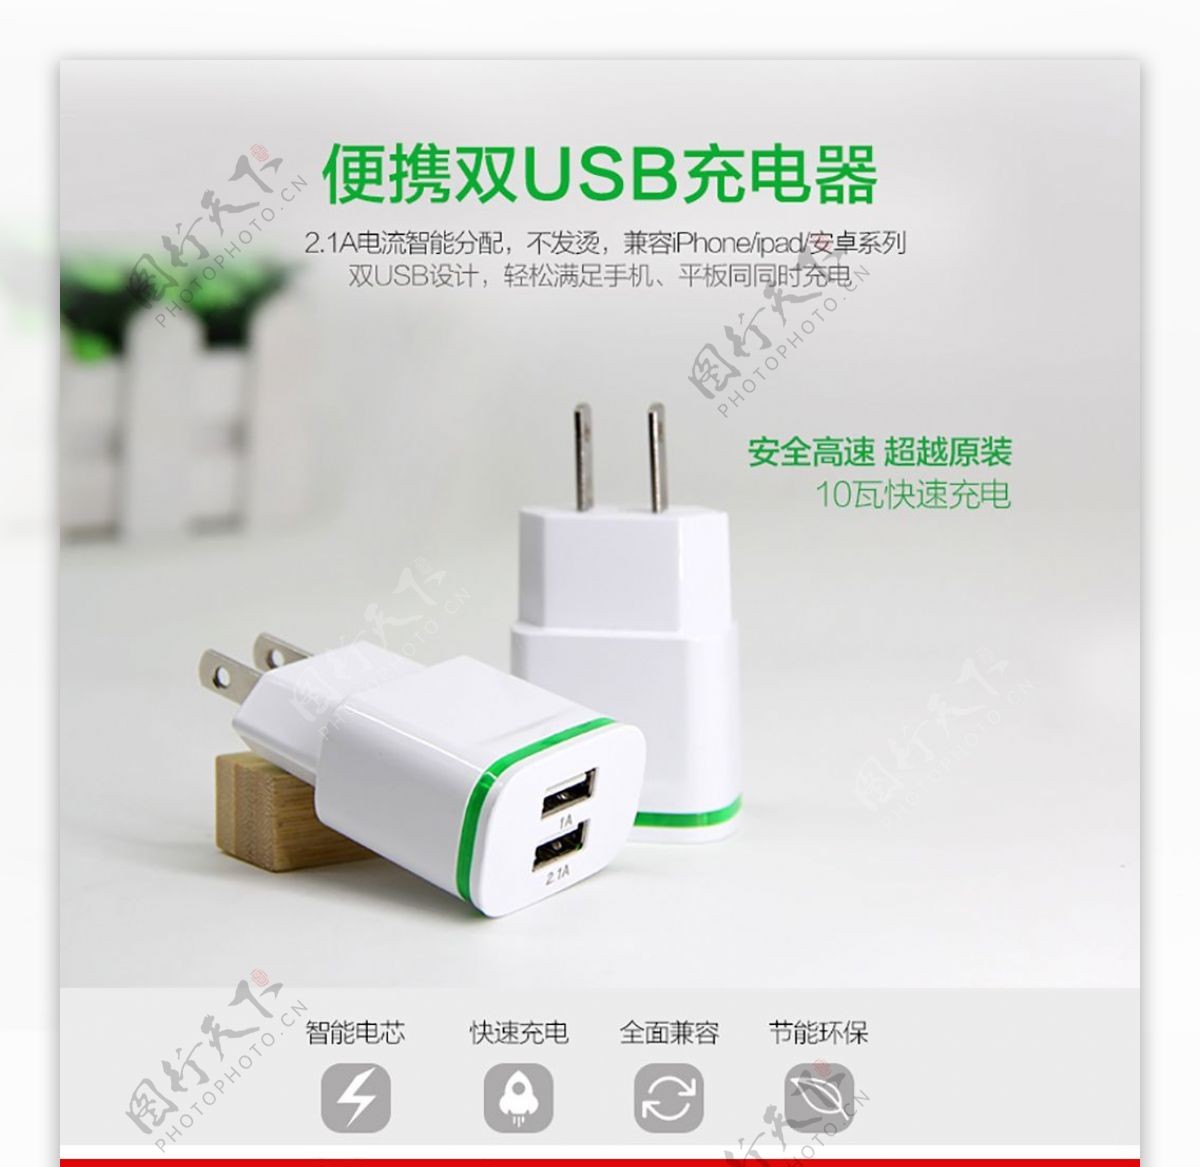 安卓苹果USB双头充电头充电器详情页描述